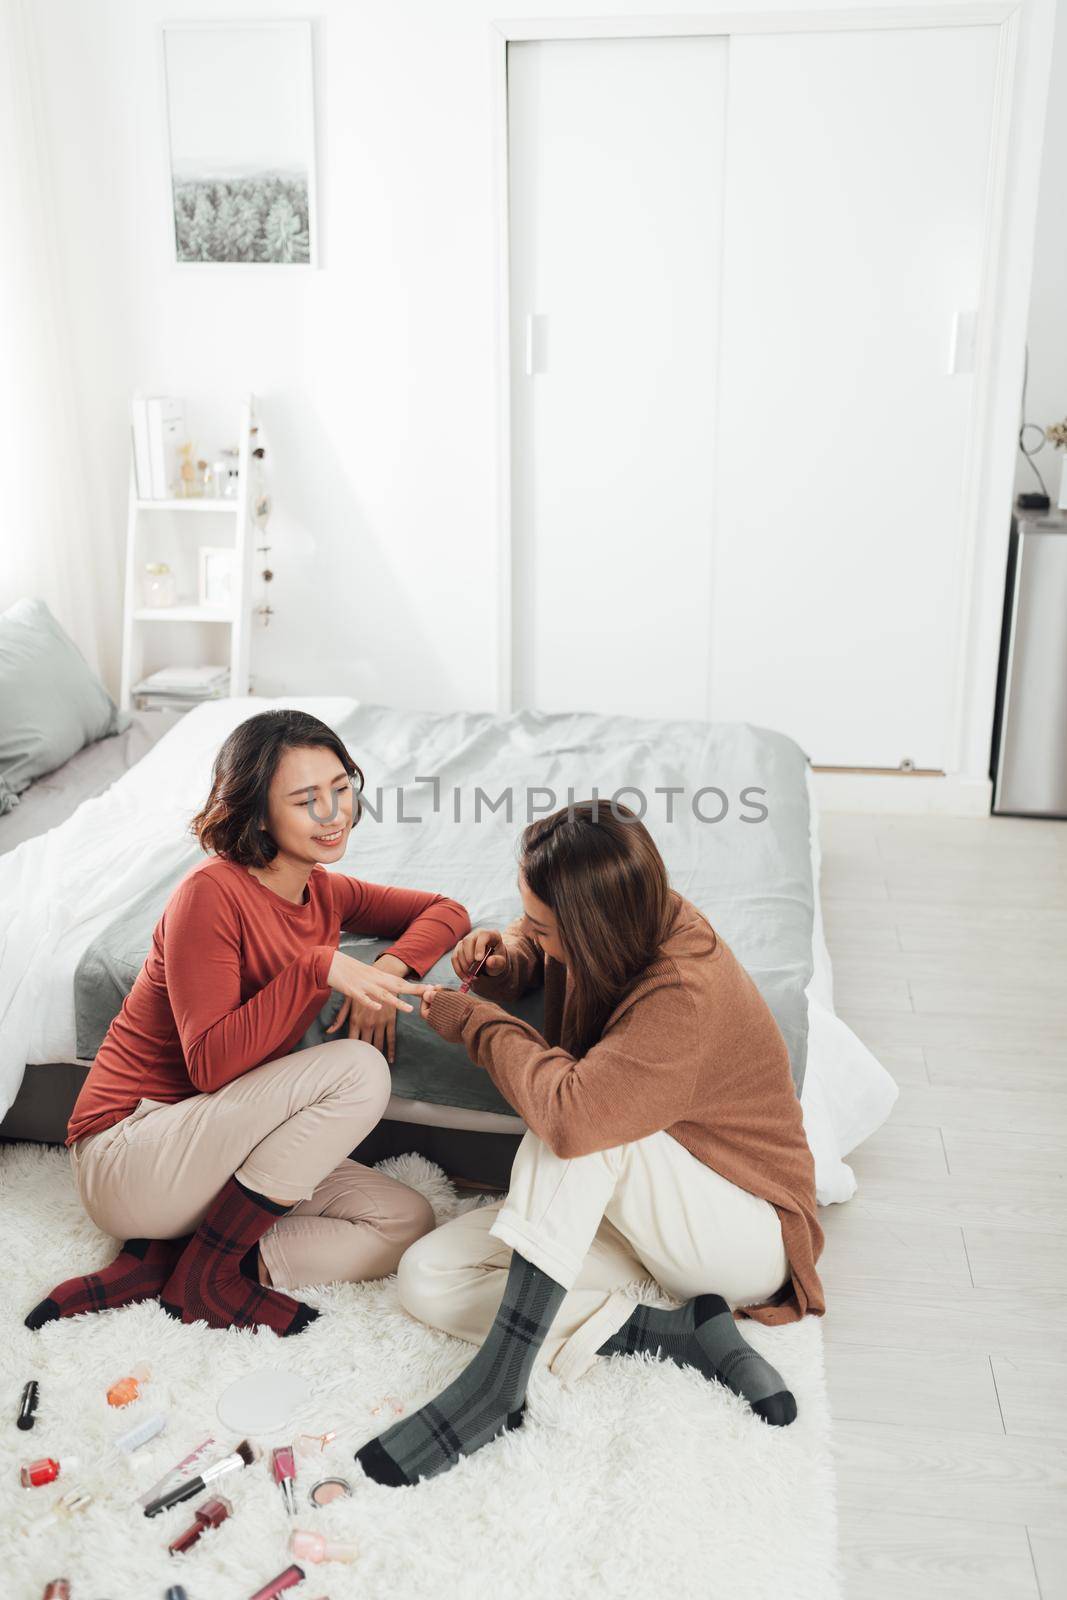 Women applying nail polish at home